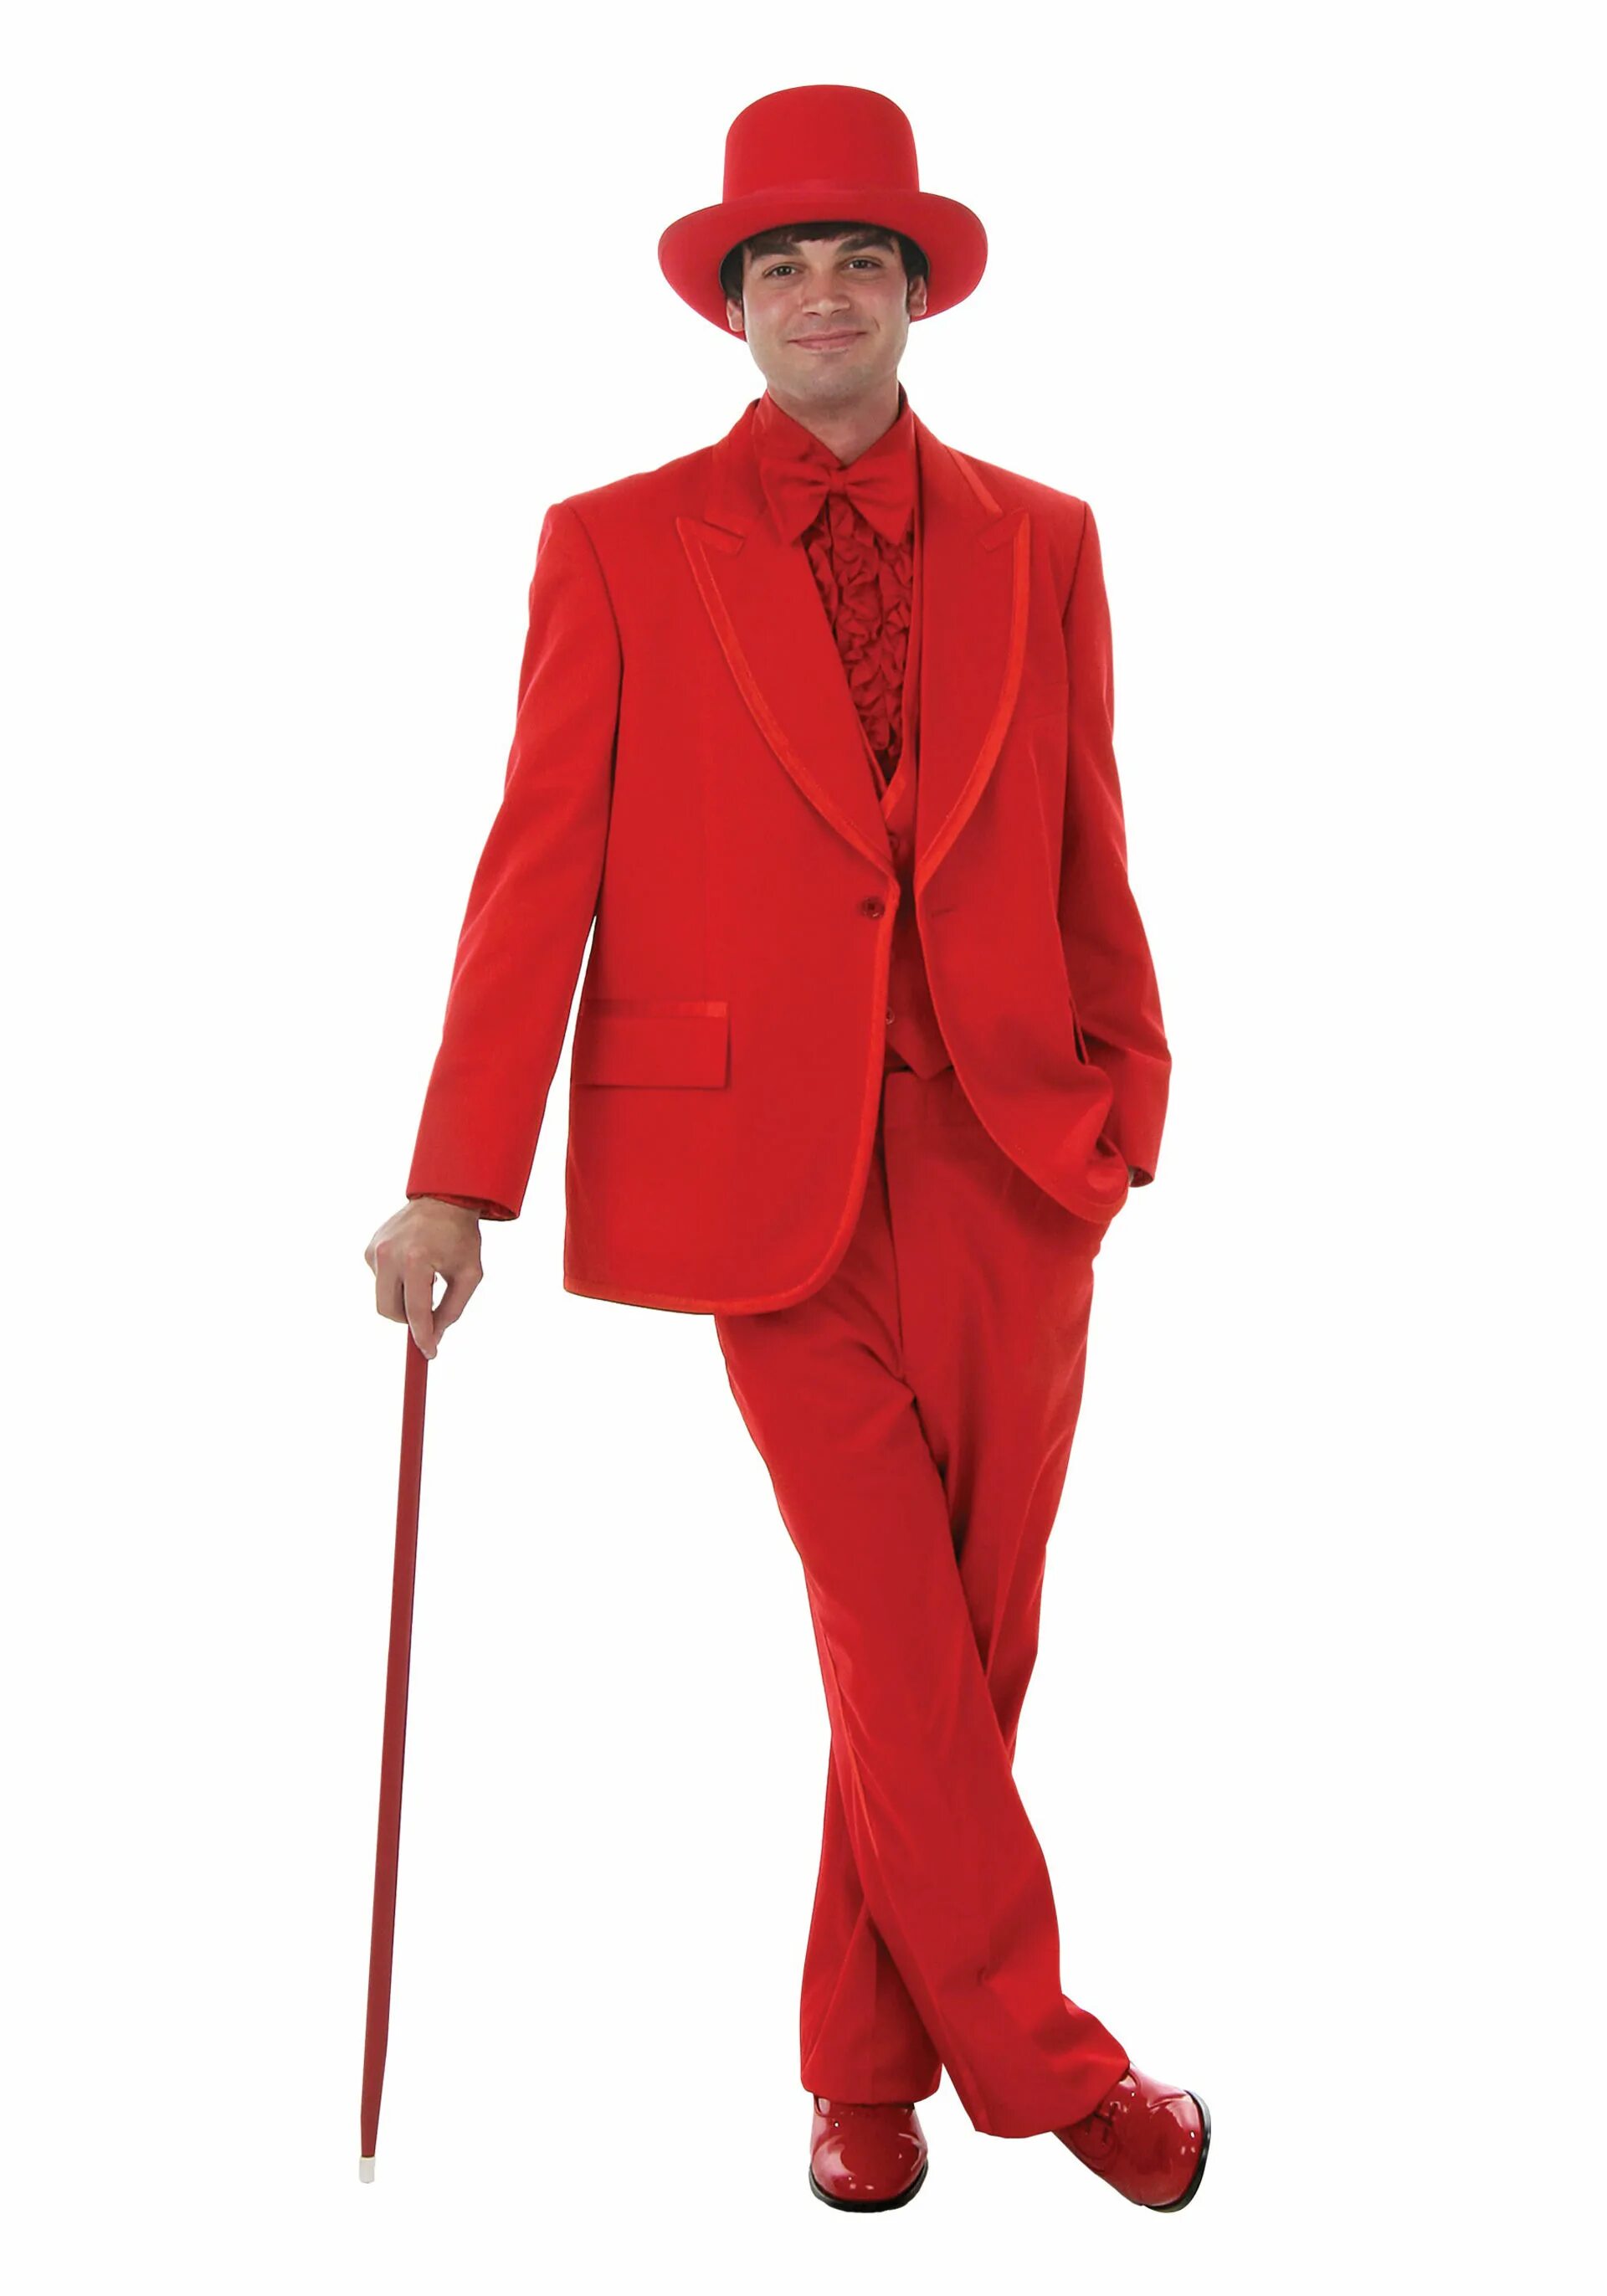 Взять напрокат. Красный человек. Человек в Красном костюме. Мужик в Красном костюме. Человек в костюме и шляпе.